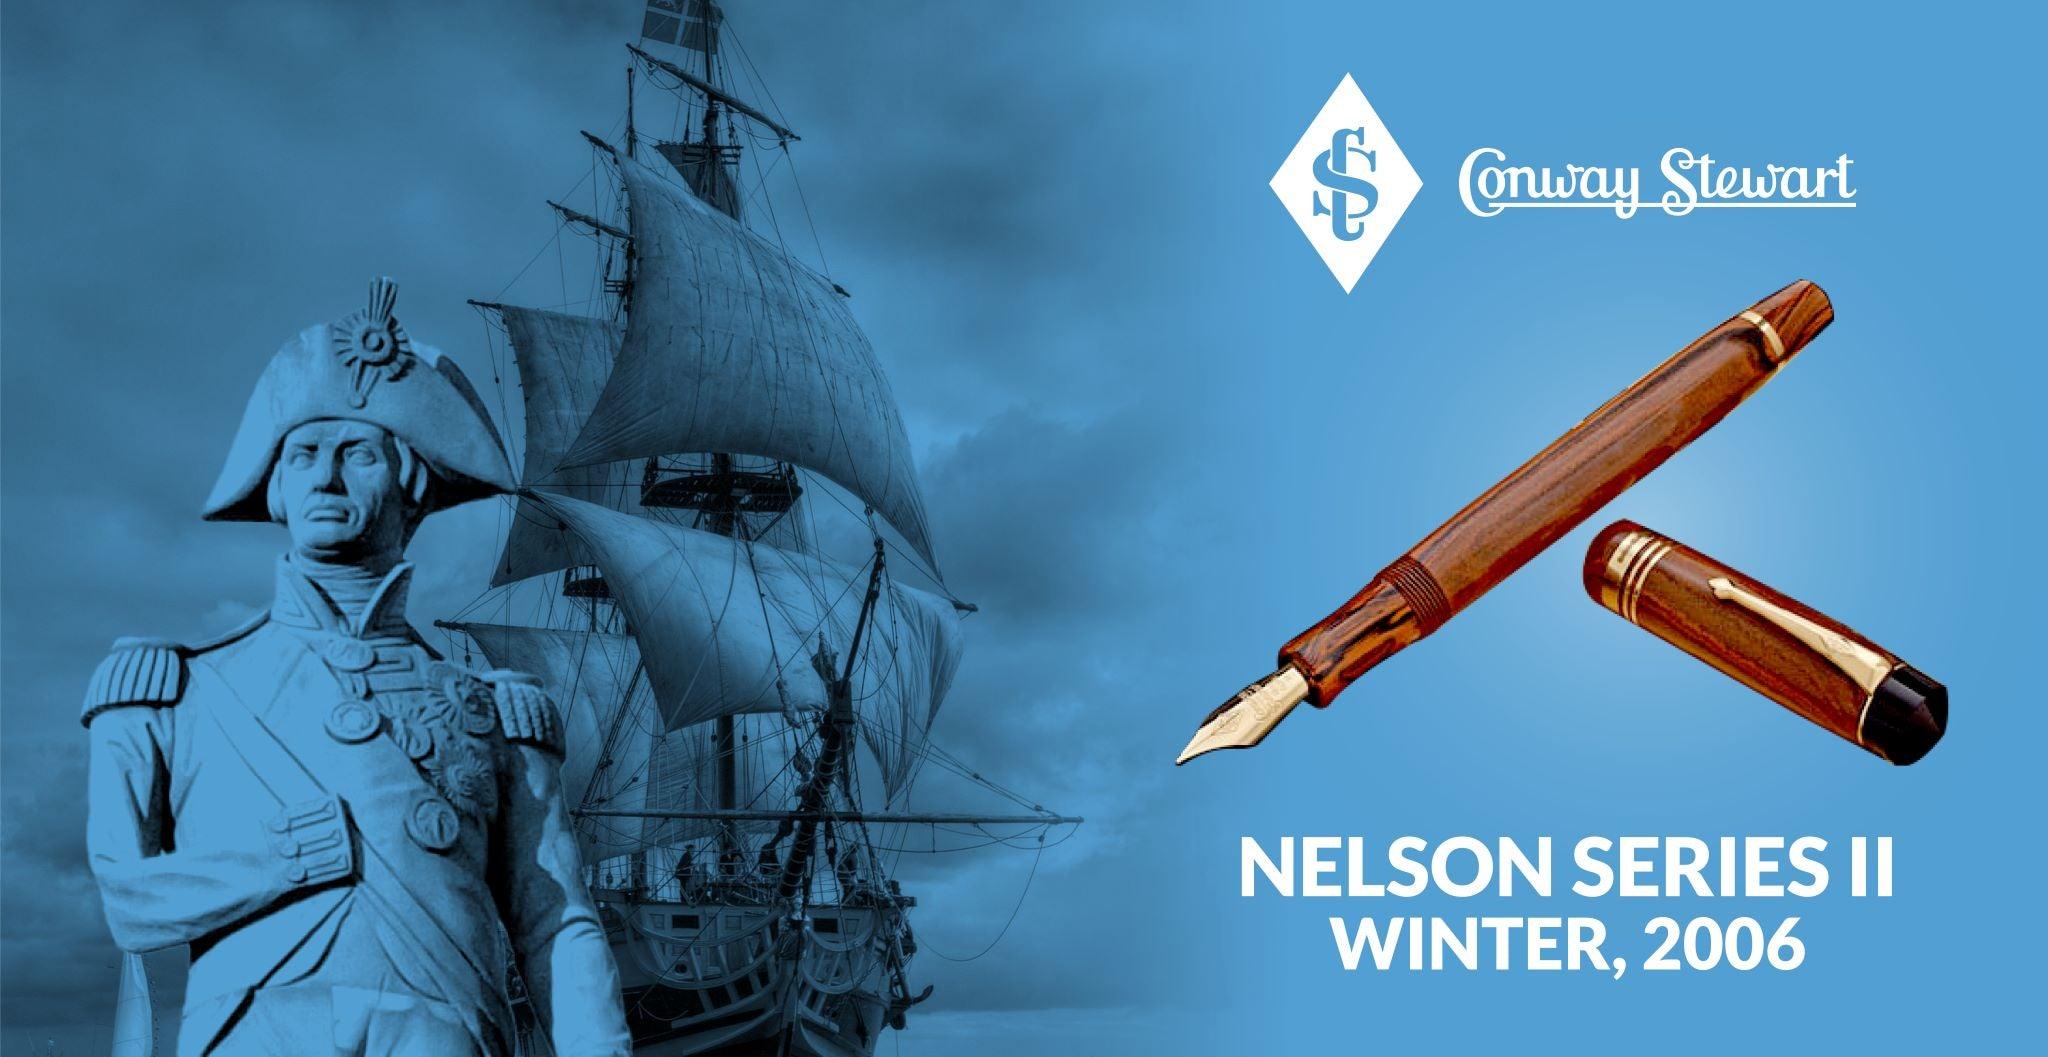 "Nelson Series II" Winter, 2006 - Conway Stewart